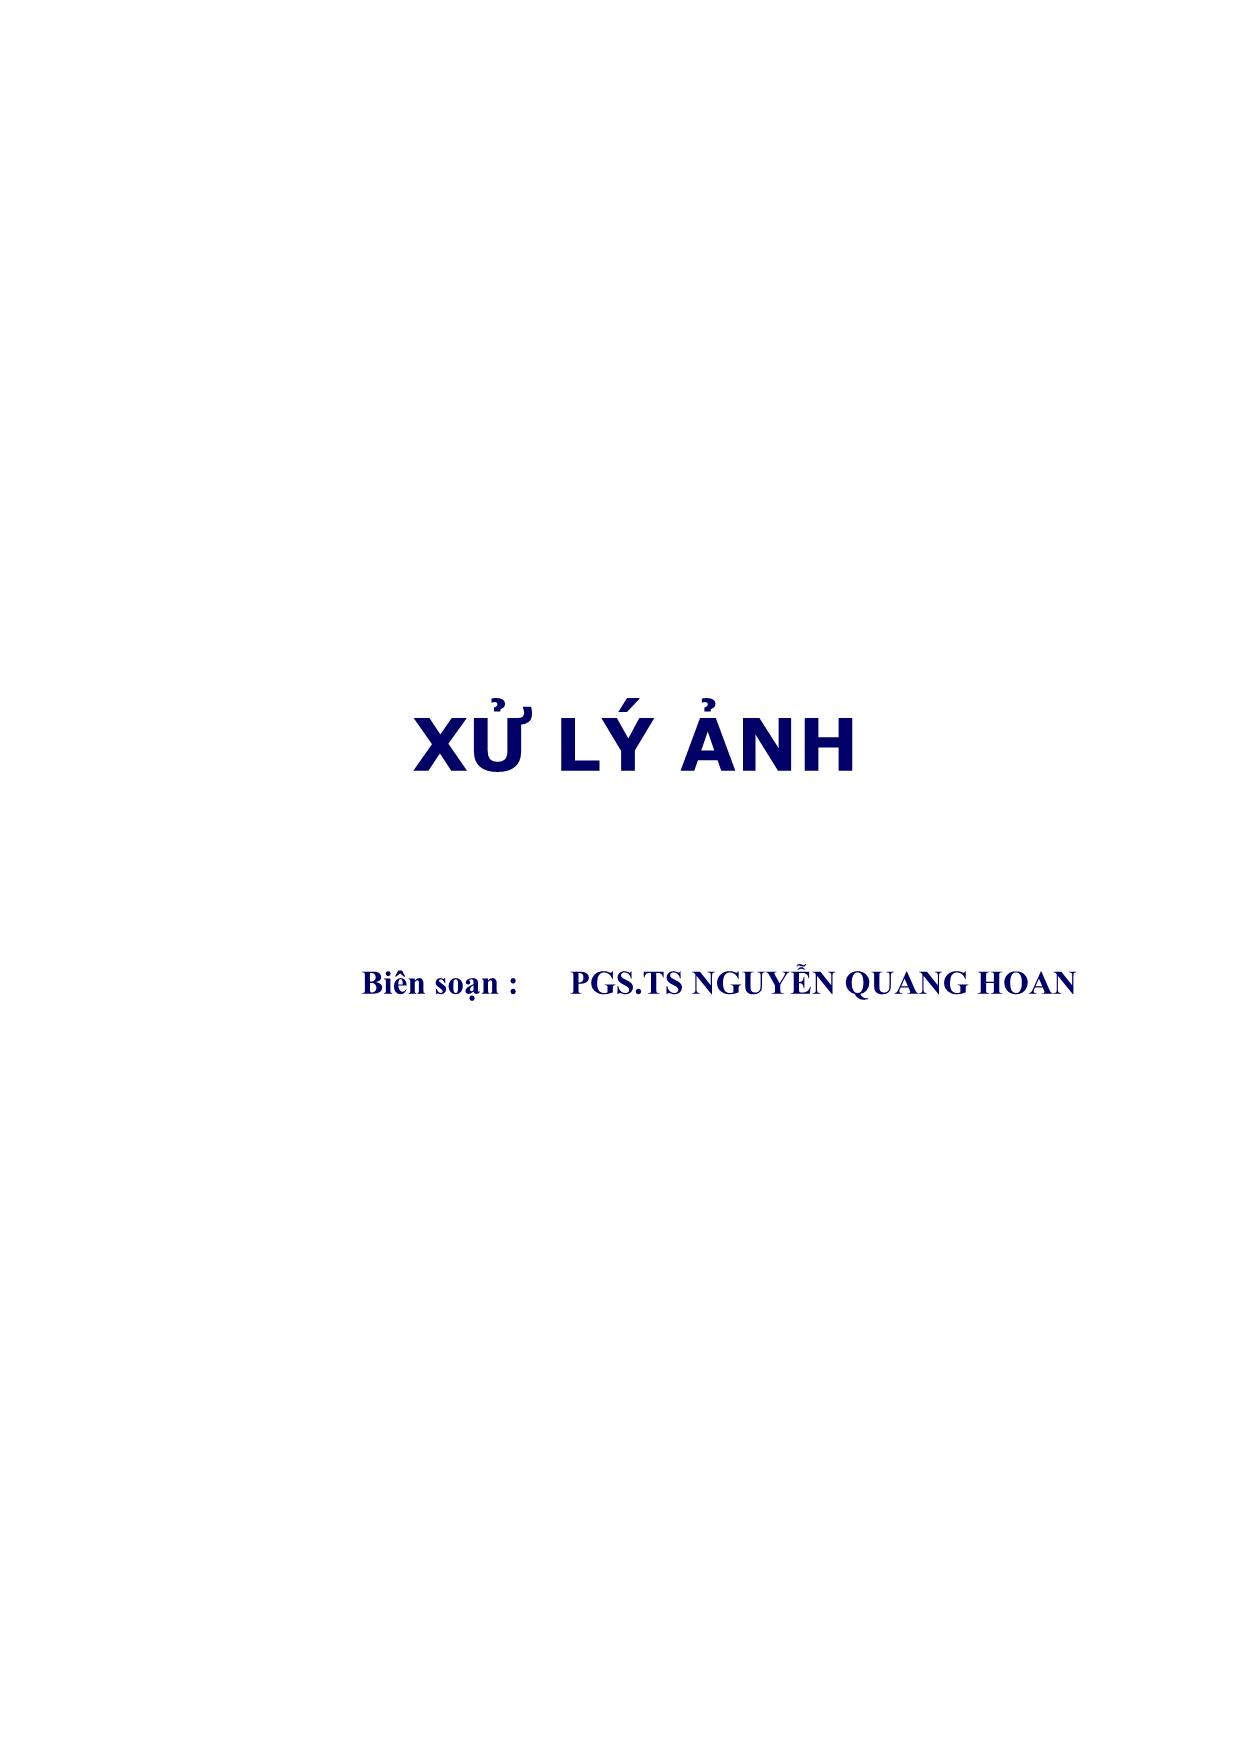 Giáo trình Xử lý ảnh - Nguyễn Quang Hoan trang 2